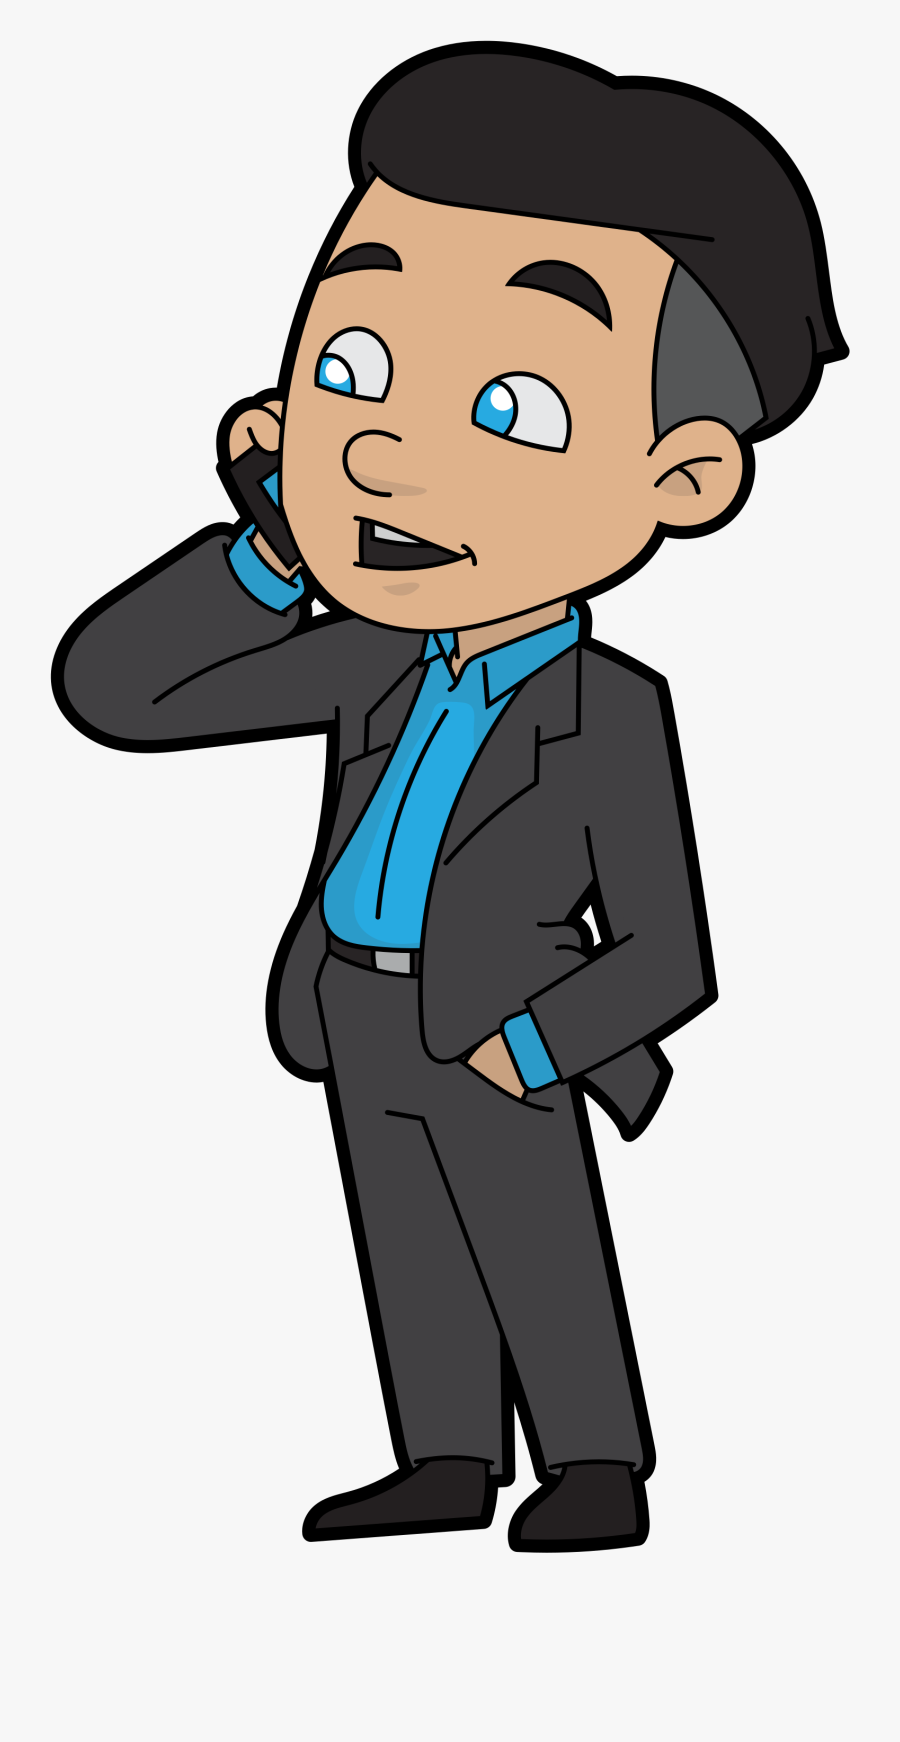 Transparent Cartoon Phone Png - Cartoon Businessman On The Phone, Transparent Clipart